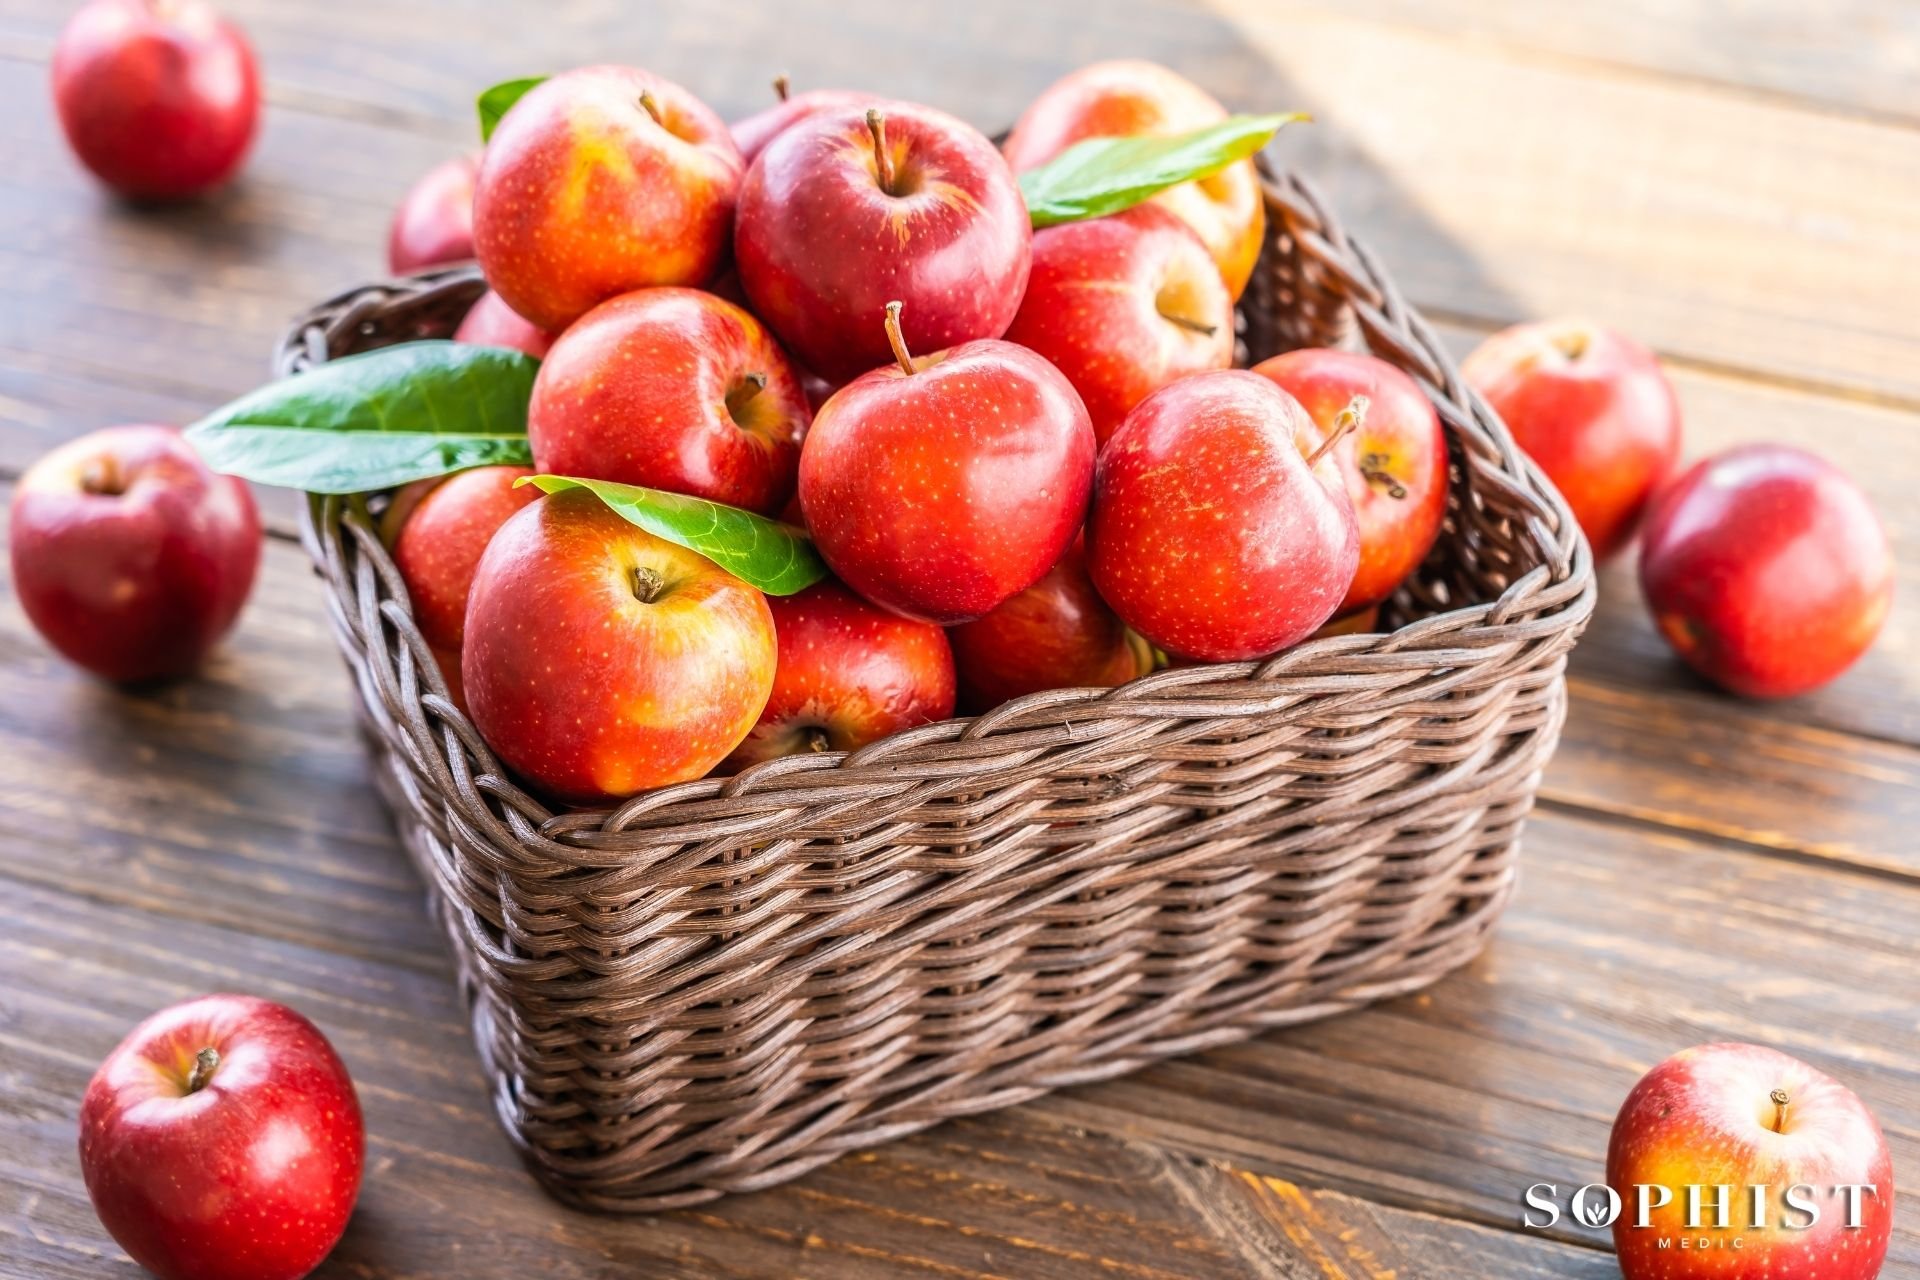 แอปเปิ้ลแดง อาหารไหว้ วันตรุษจีน อาหารมงคล อาหารบำรุงสุขภาพ